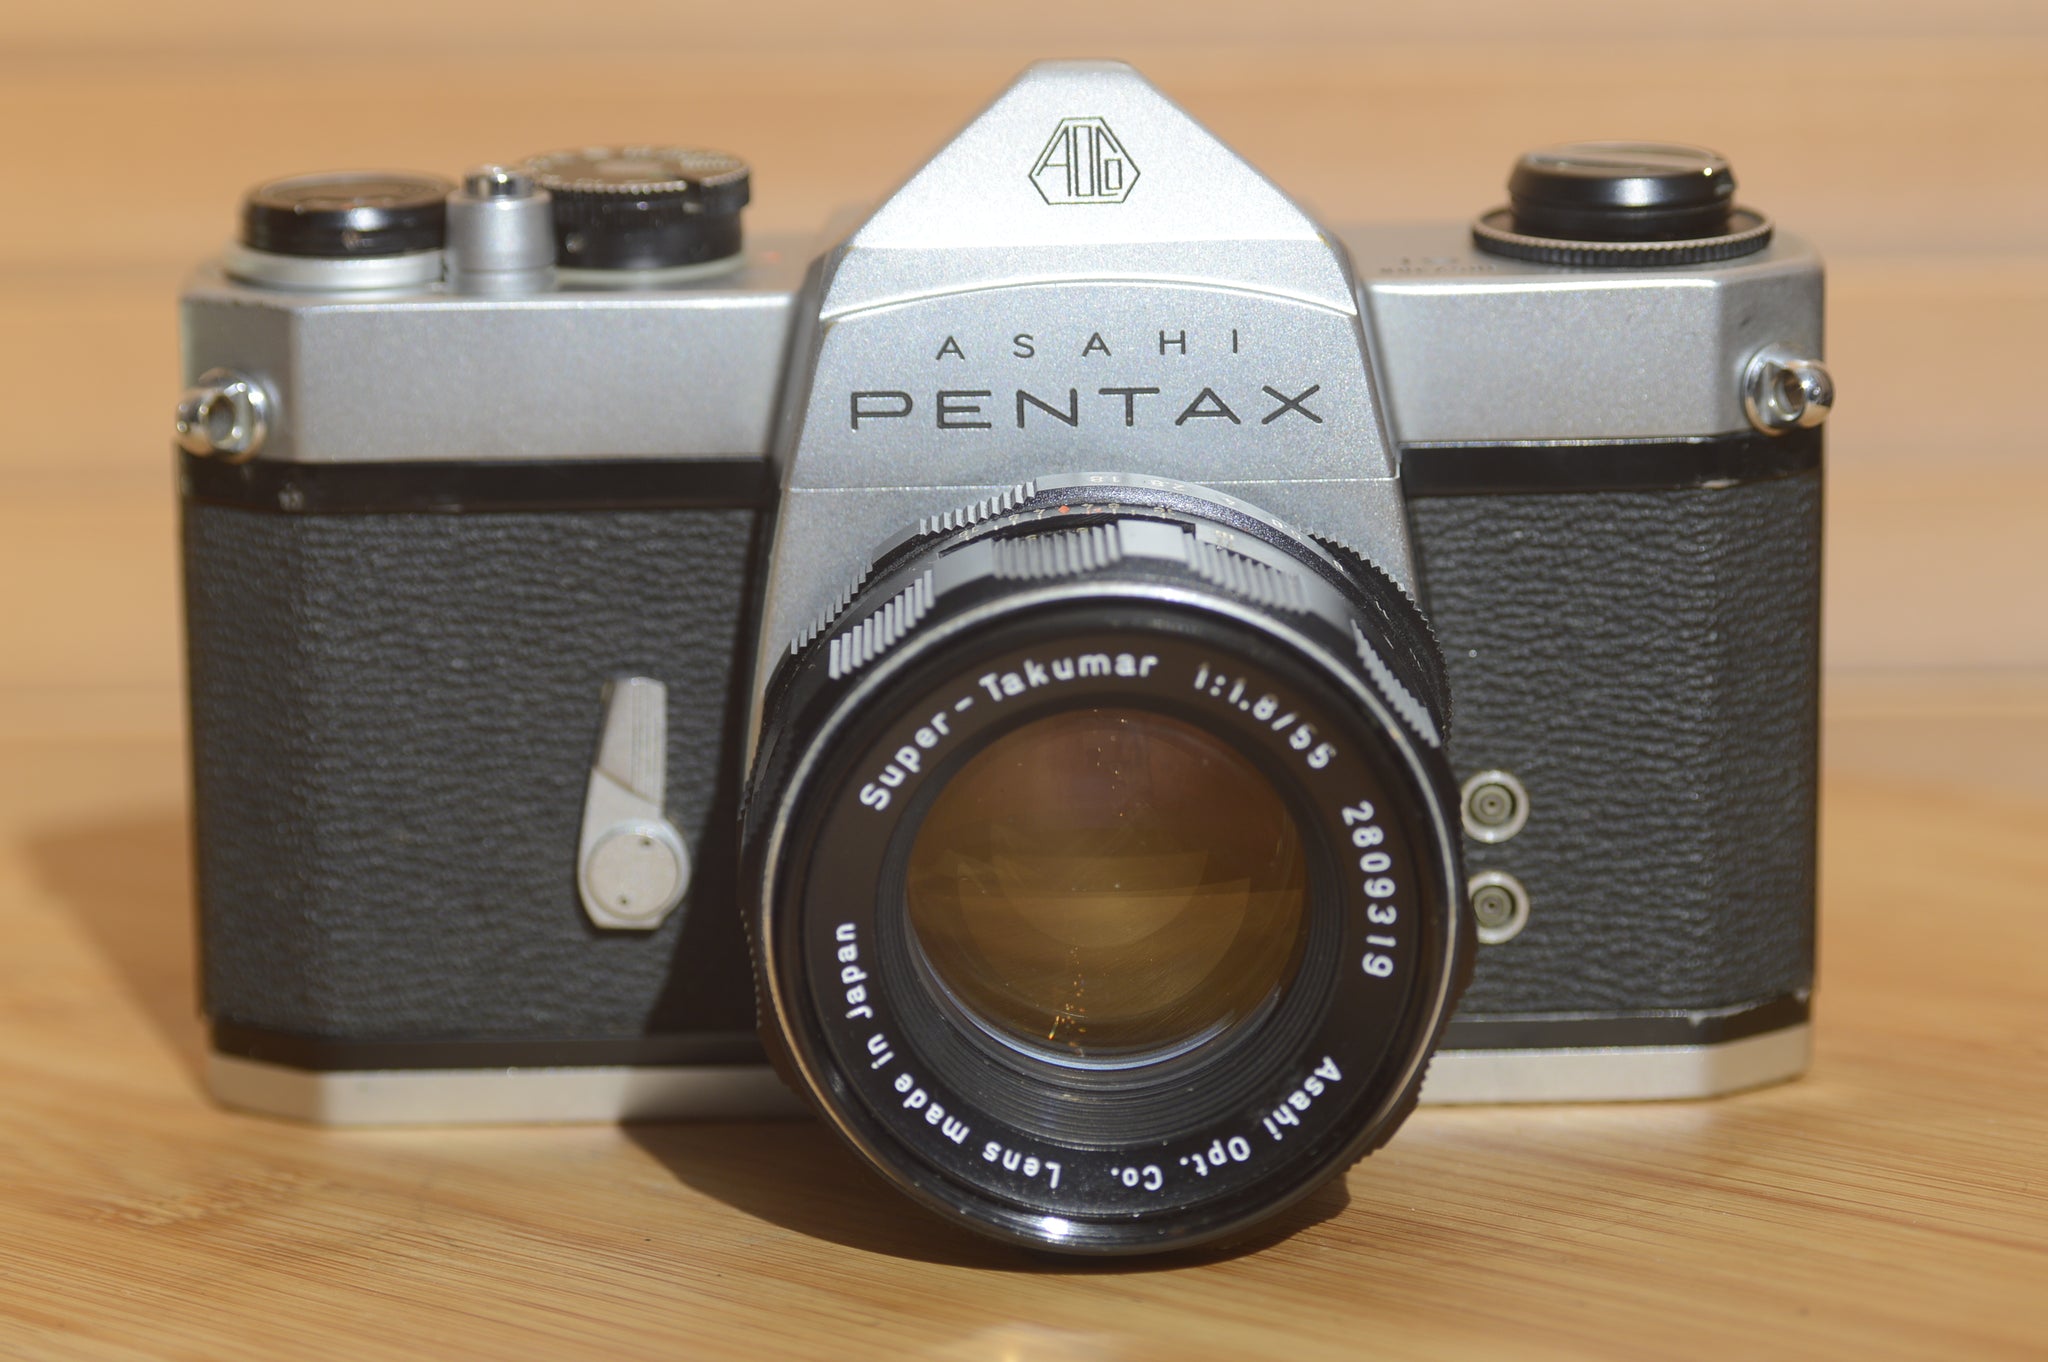 Asahi Pentax Spotmatic SL with Super Takumar 55mm f1.8. Fantastic 